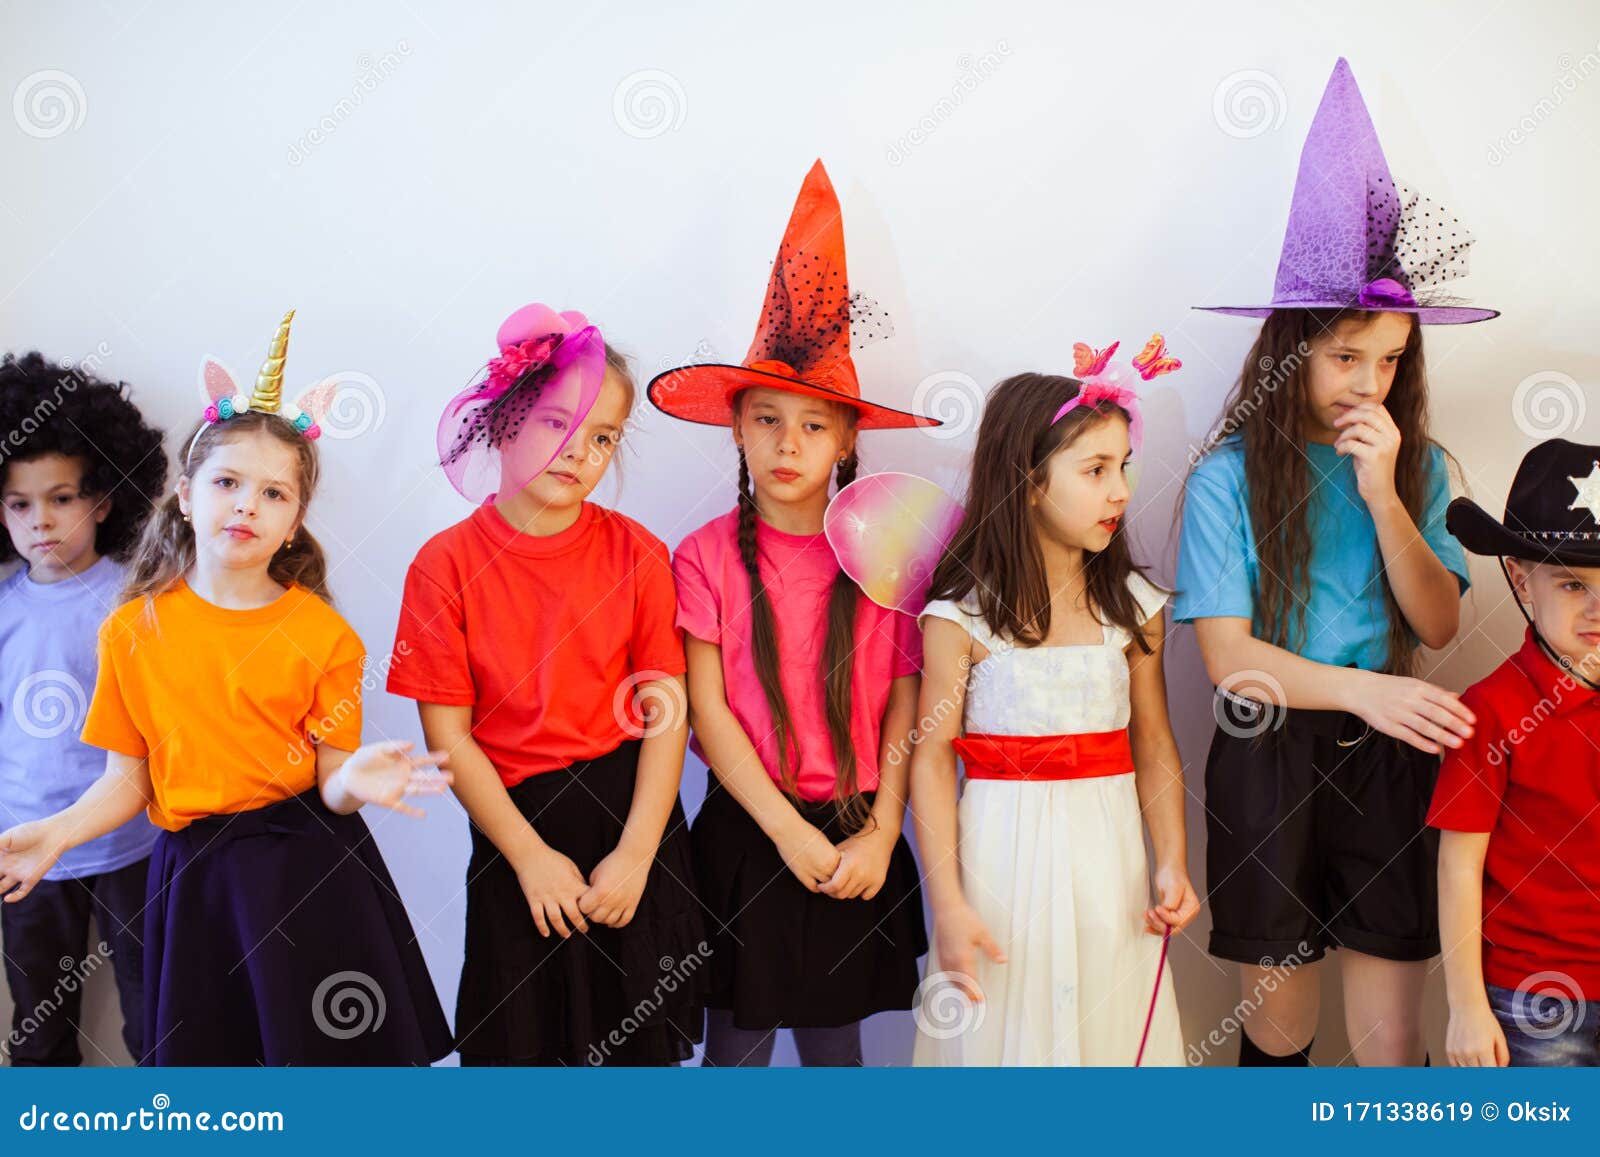 Grupo De Niños Aburridos En Una Fiesta De Cumpleaños Niños Disfraces Y Sombreros Divertidos Que Tienen Mal Humor Imagen de archivo - Imagen de vacaciones, personas: 171338619